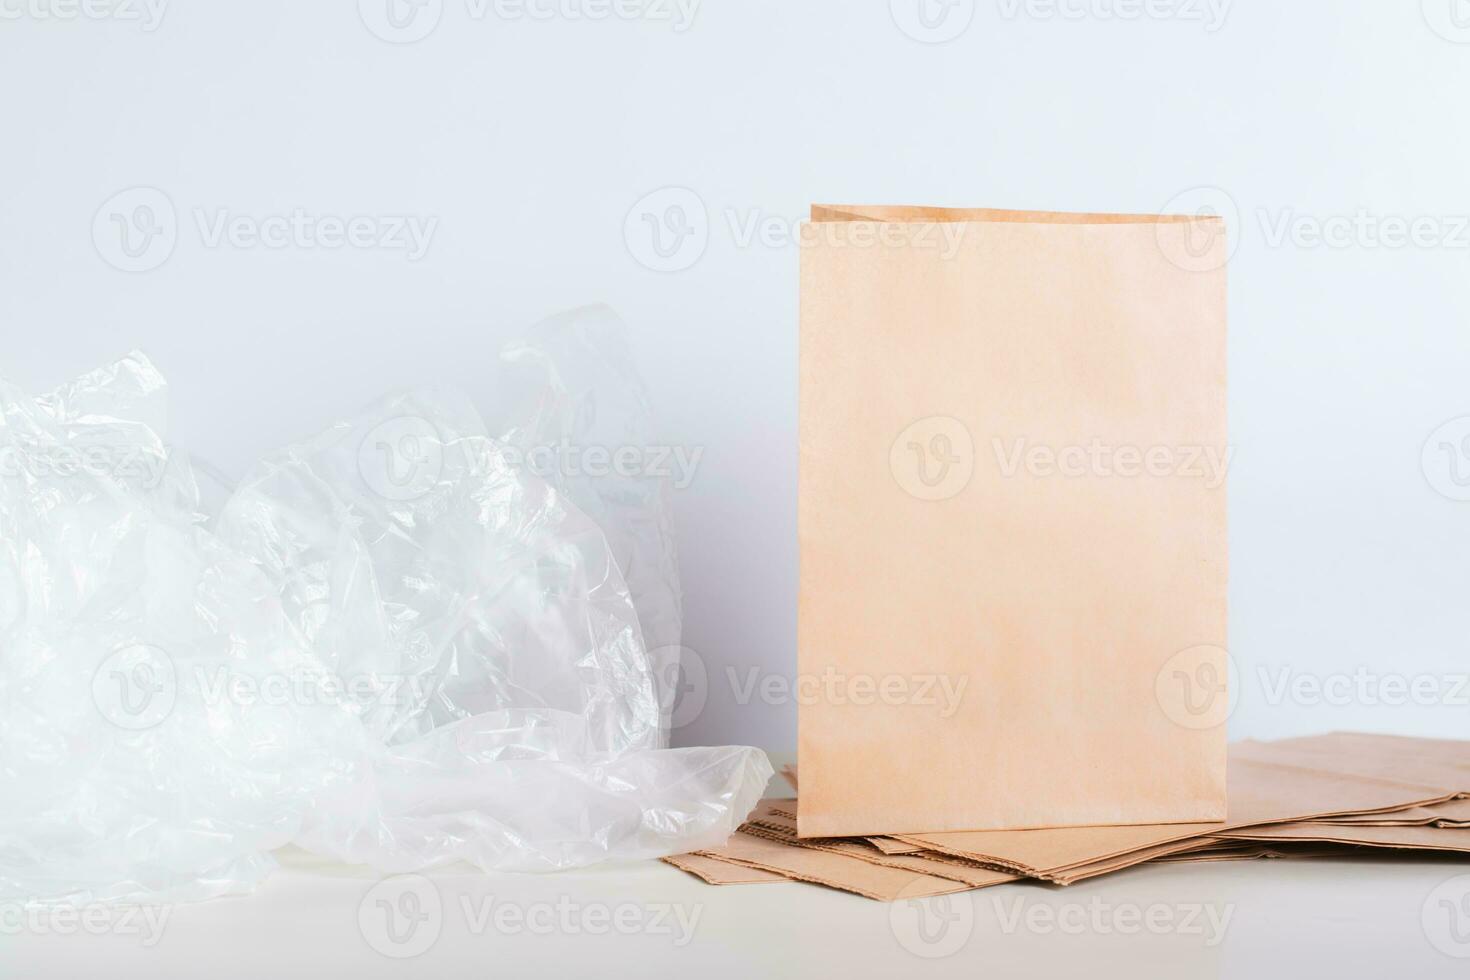 papel saco em uma pilha do bolsas e amassado celofane plástico bolsas em a mesa foto